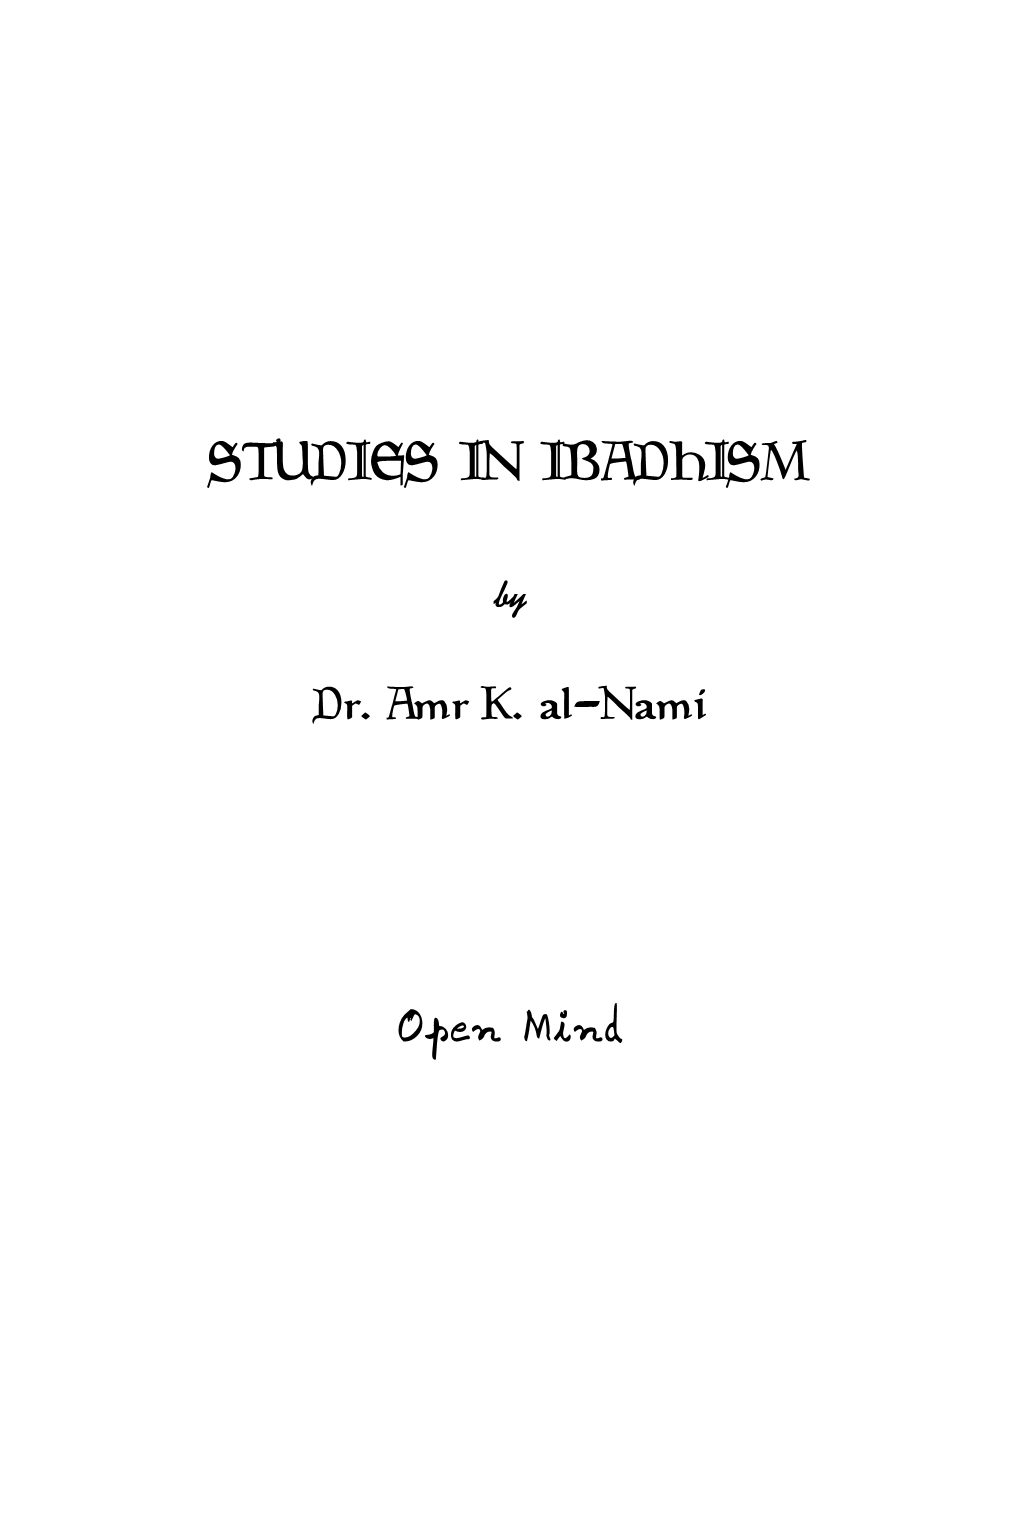 Studies in Ibadhism